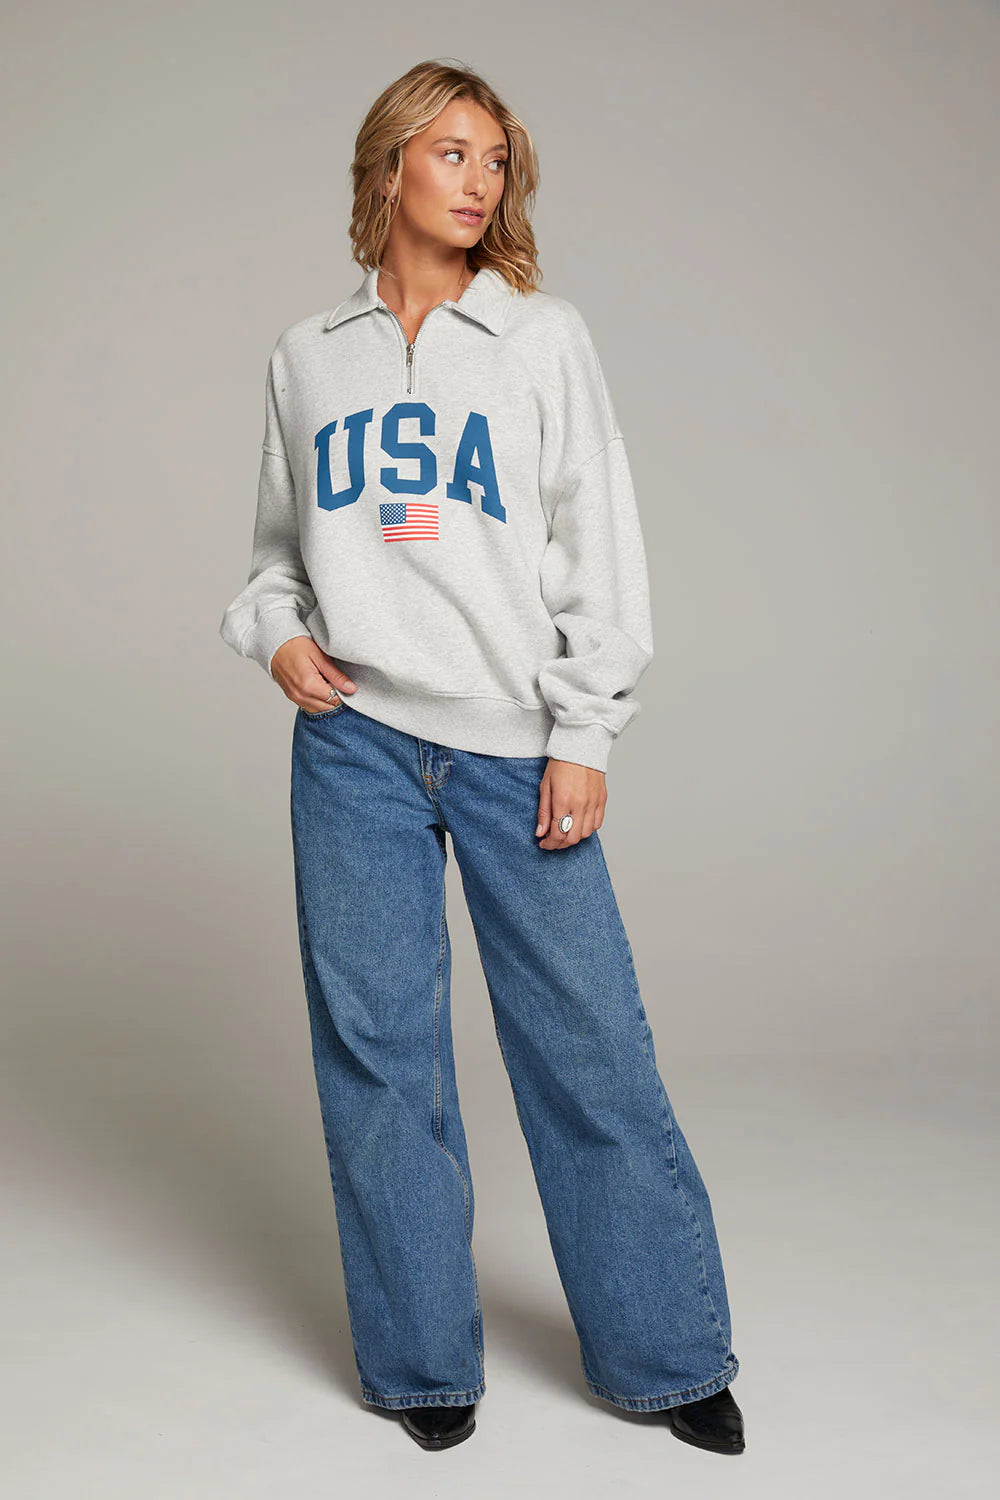 Chaser ‘USA Sweatshirt’